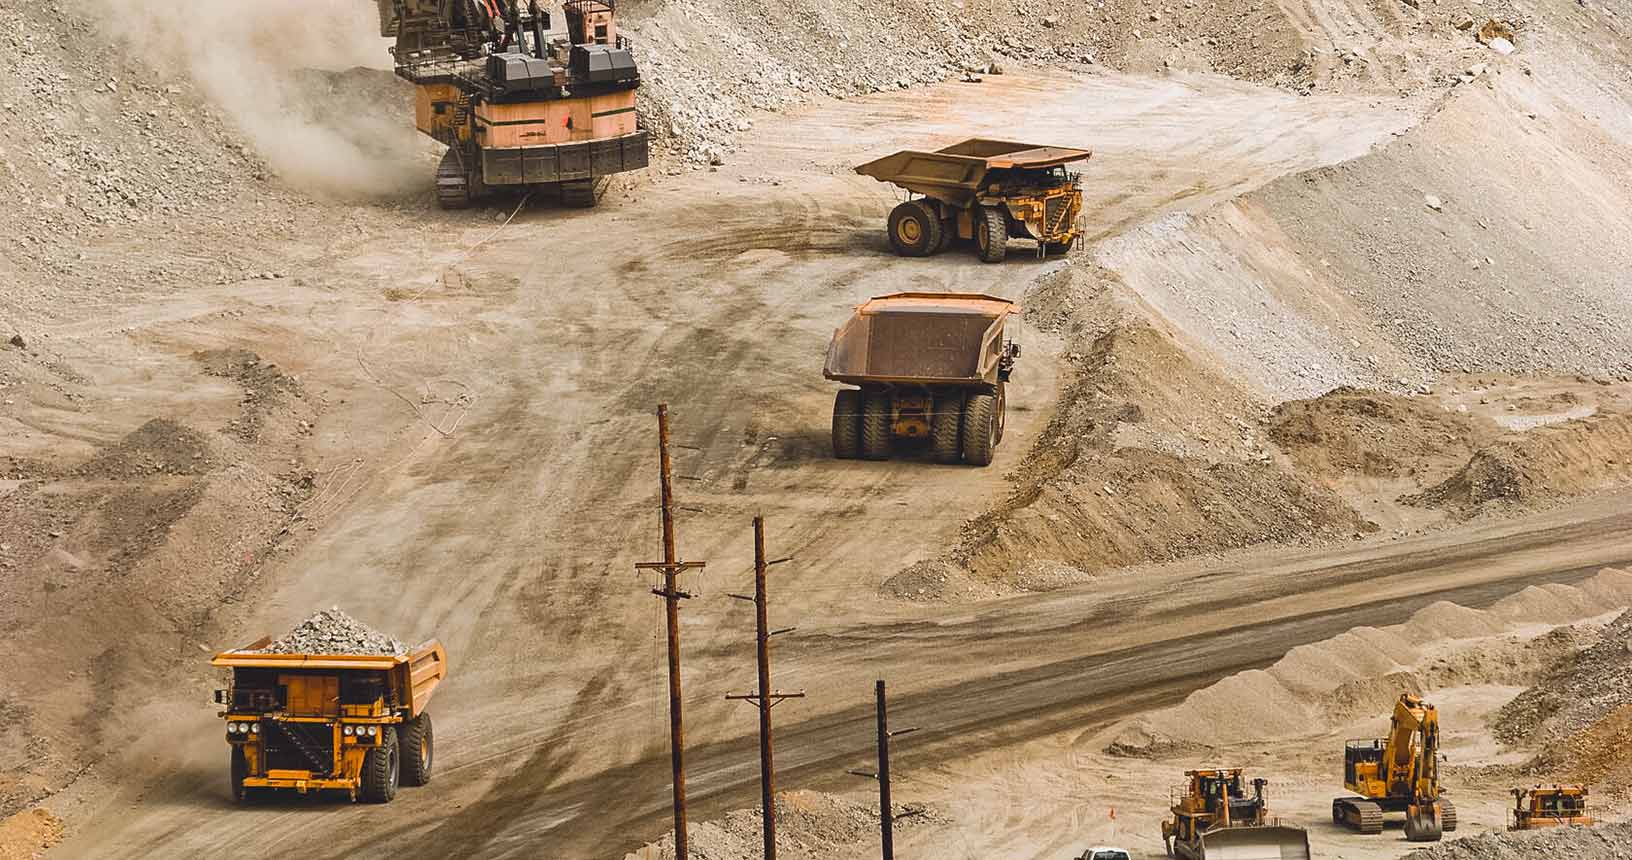 camiones de transporte y excavadoras en una mina a cielo abierto